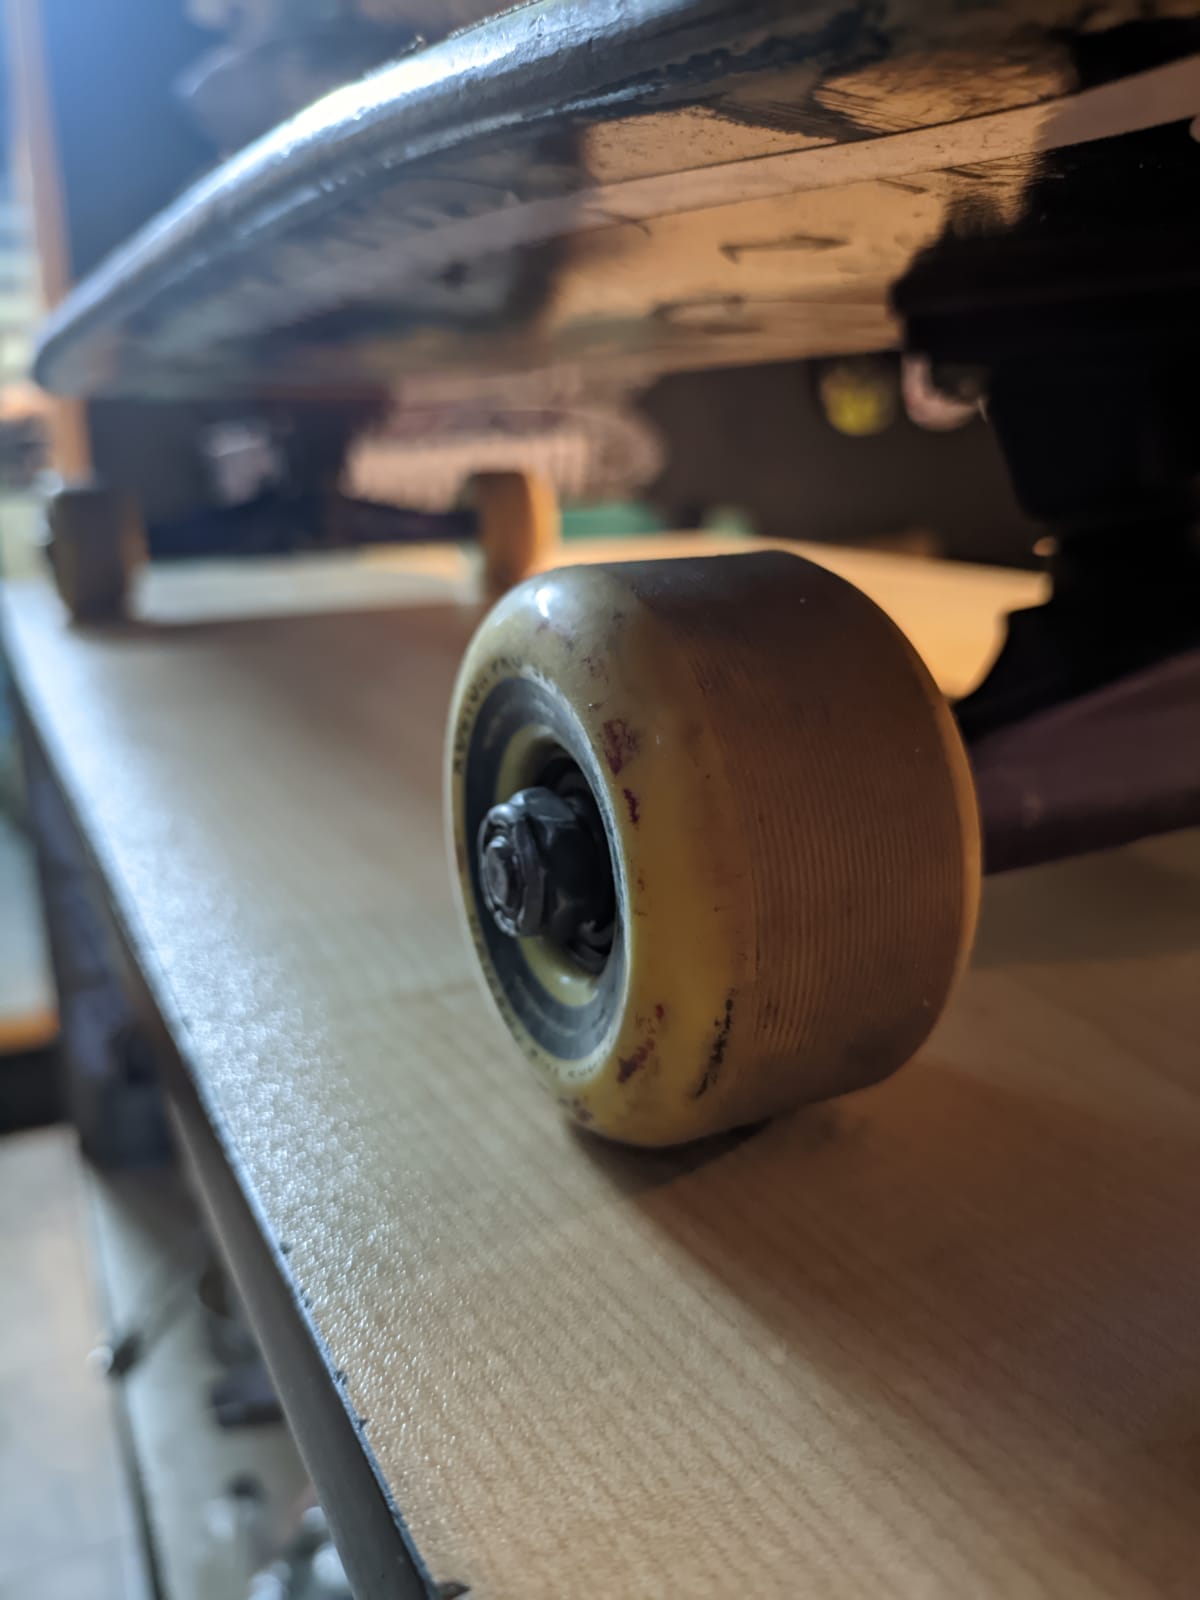 Lower side of Kyle's old skateboard